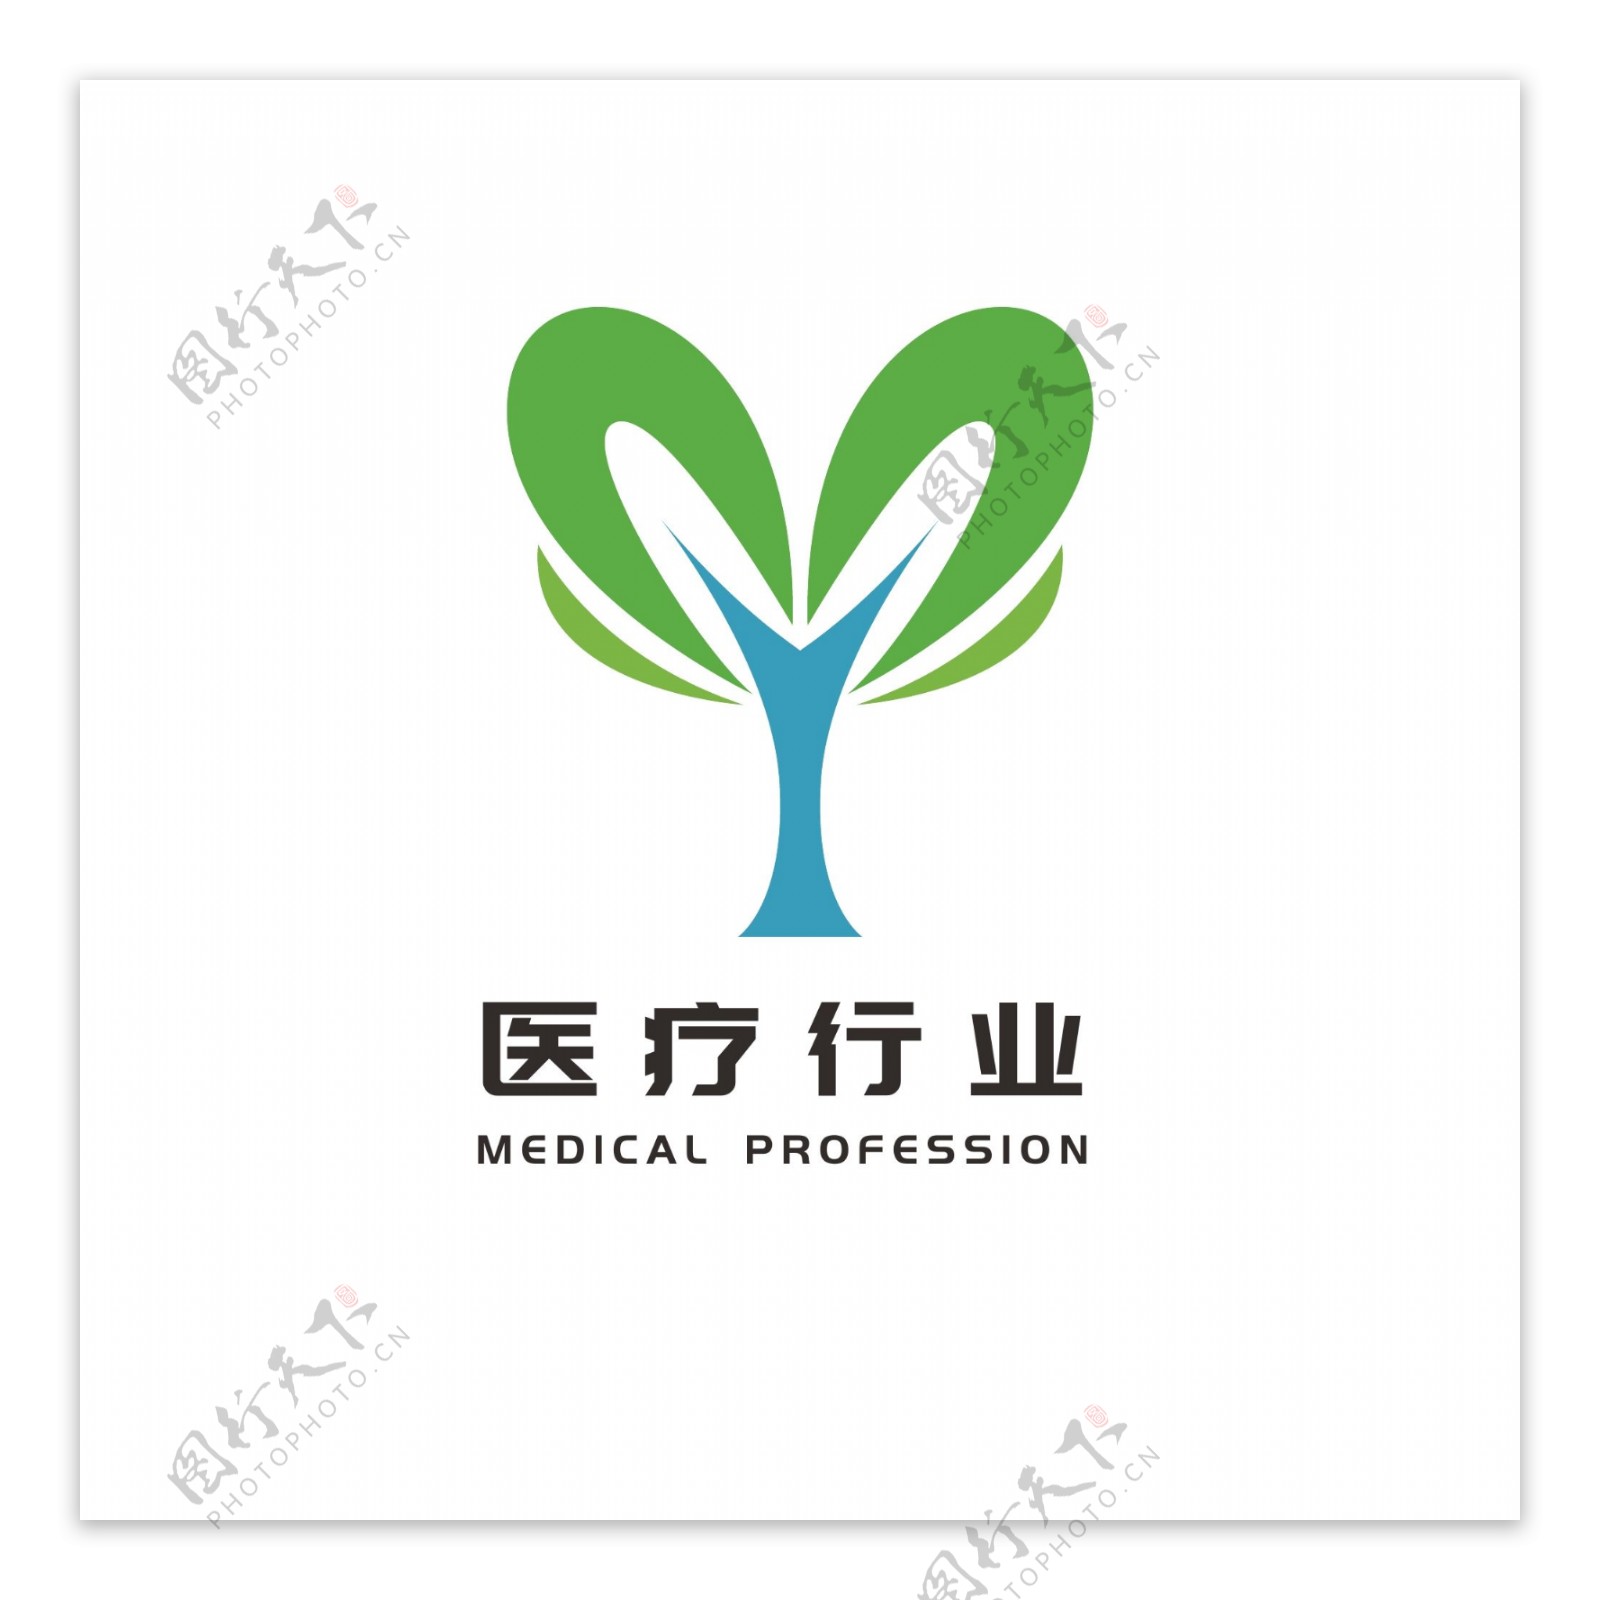 绿色树苗logo大众通用爱心logo标志